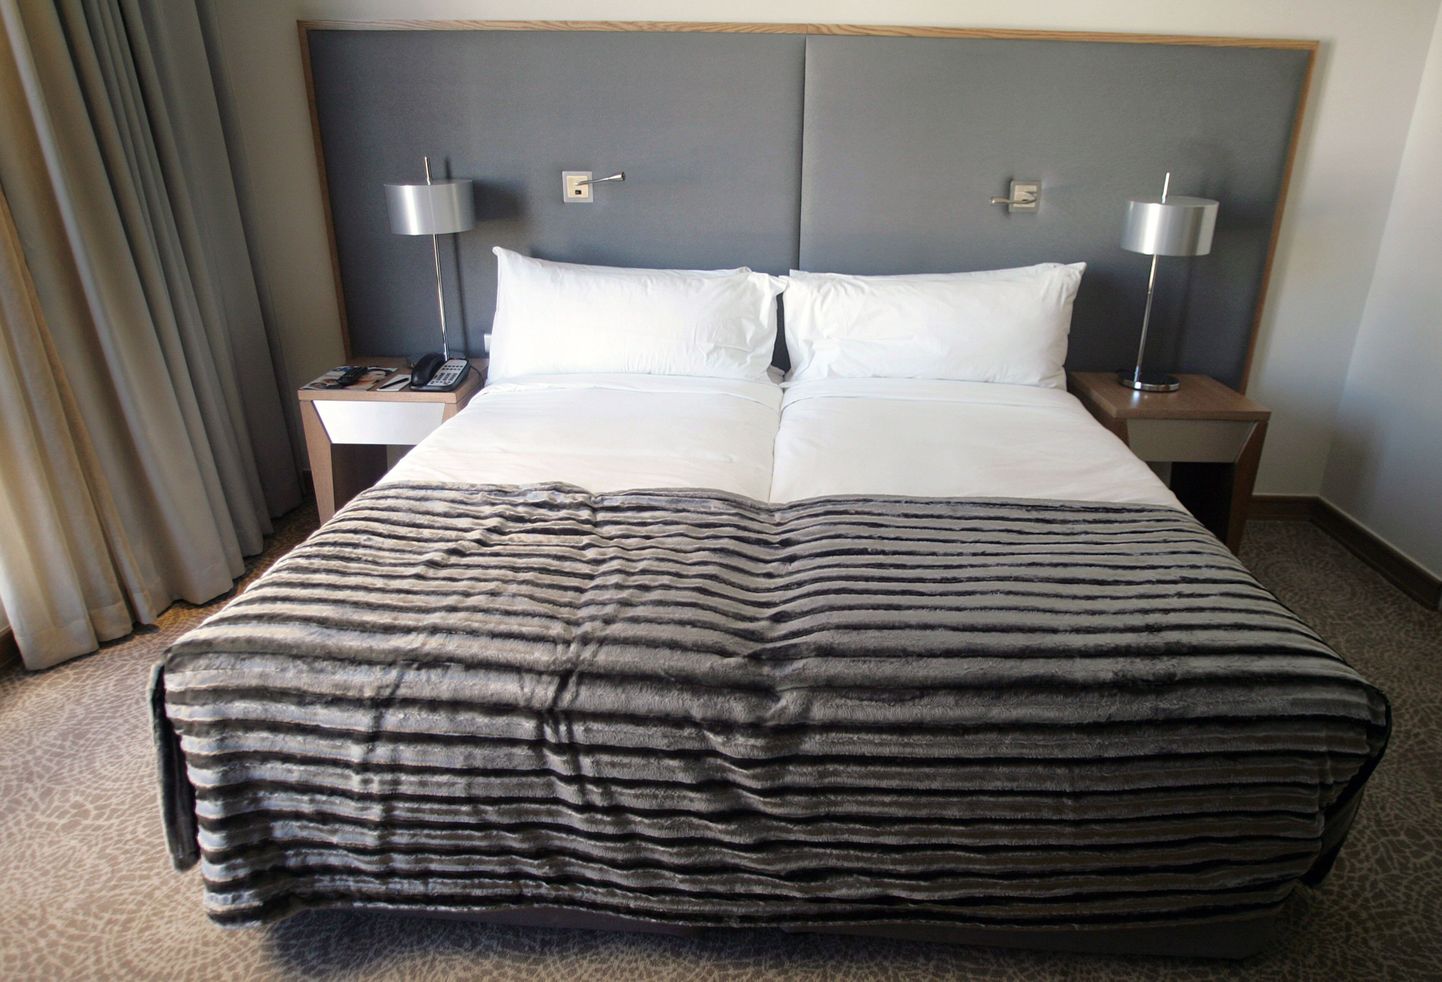 Türgi hotellid tellisid korvpalluritele sadu ekstrapikki voodeid